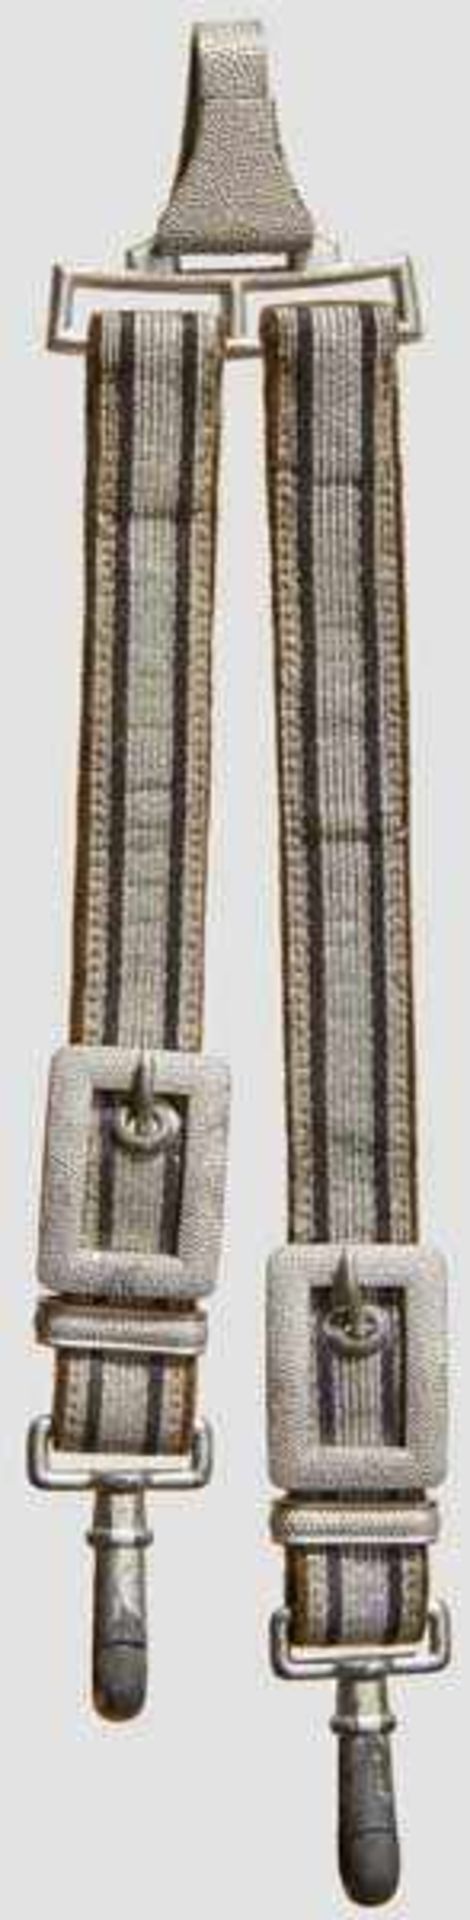 A Pair of Social Welfare Leader's Dagger Hangers Gray velvet-backed woven gray fabric interwoven